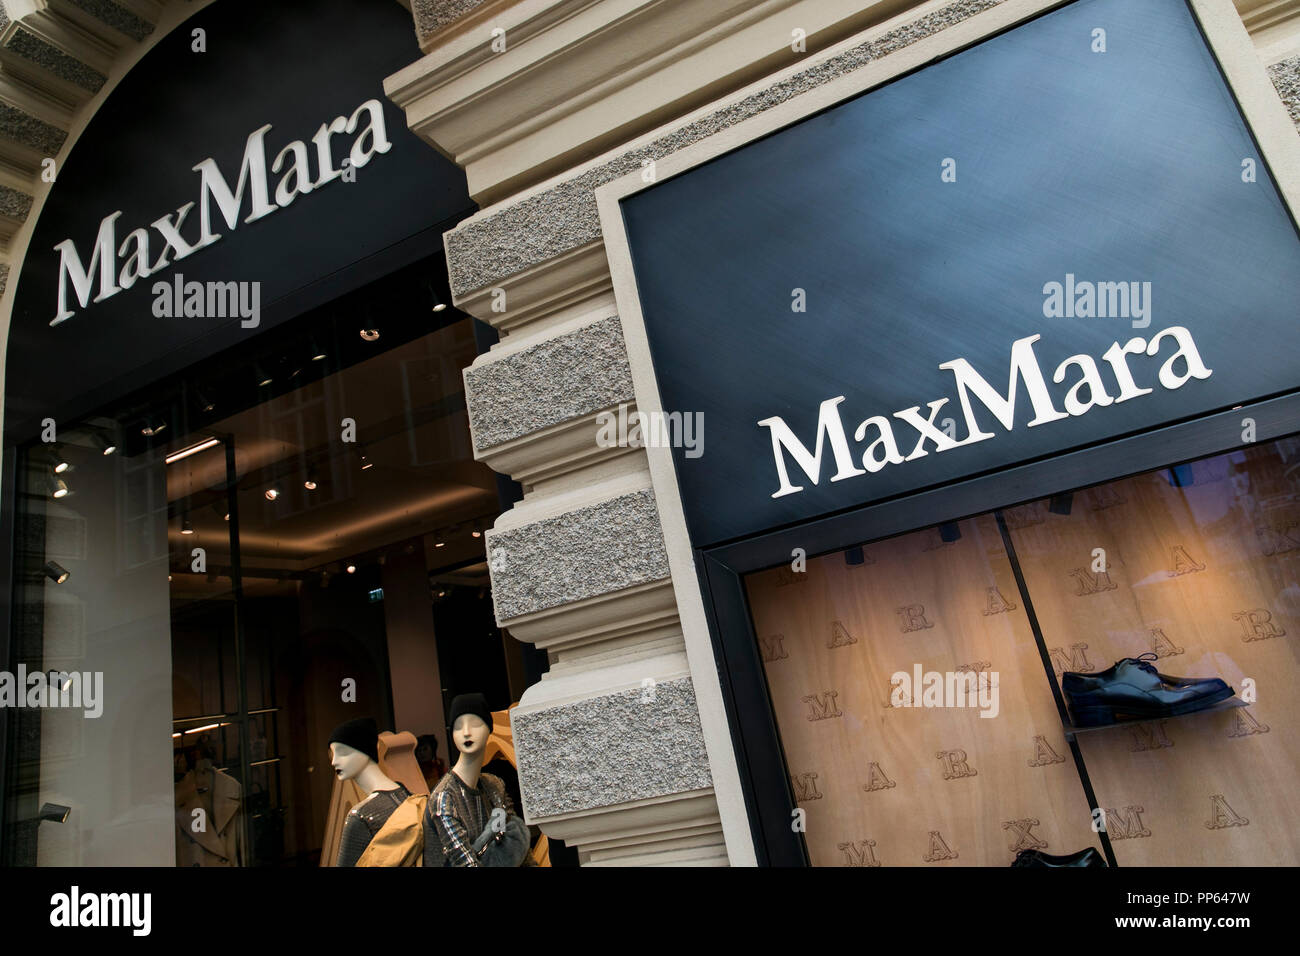 Max mara logo Banque de photographies et d'images à haute résolution - Alamy